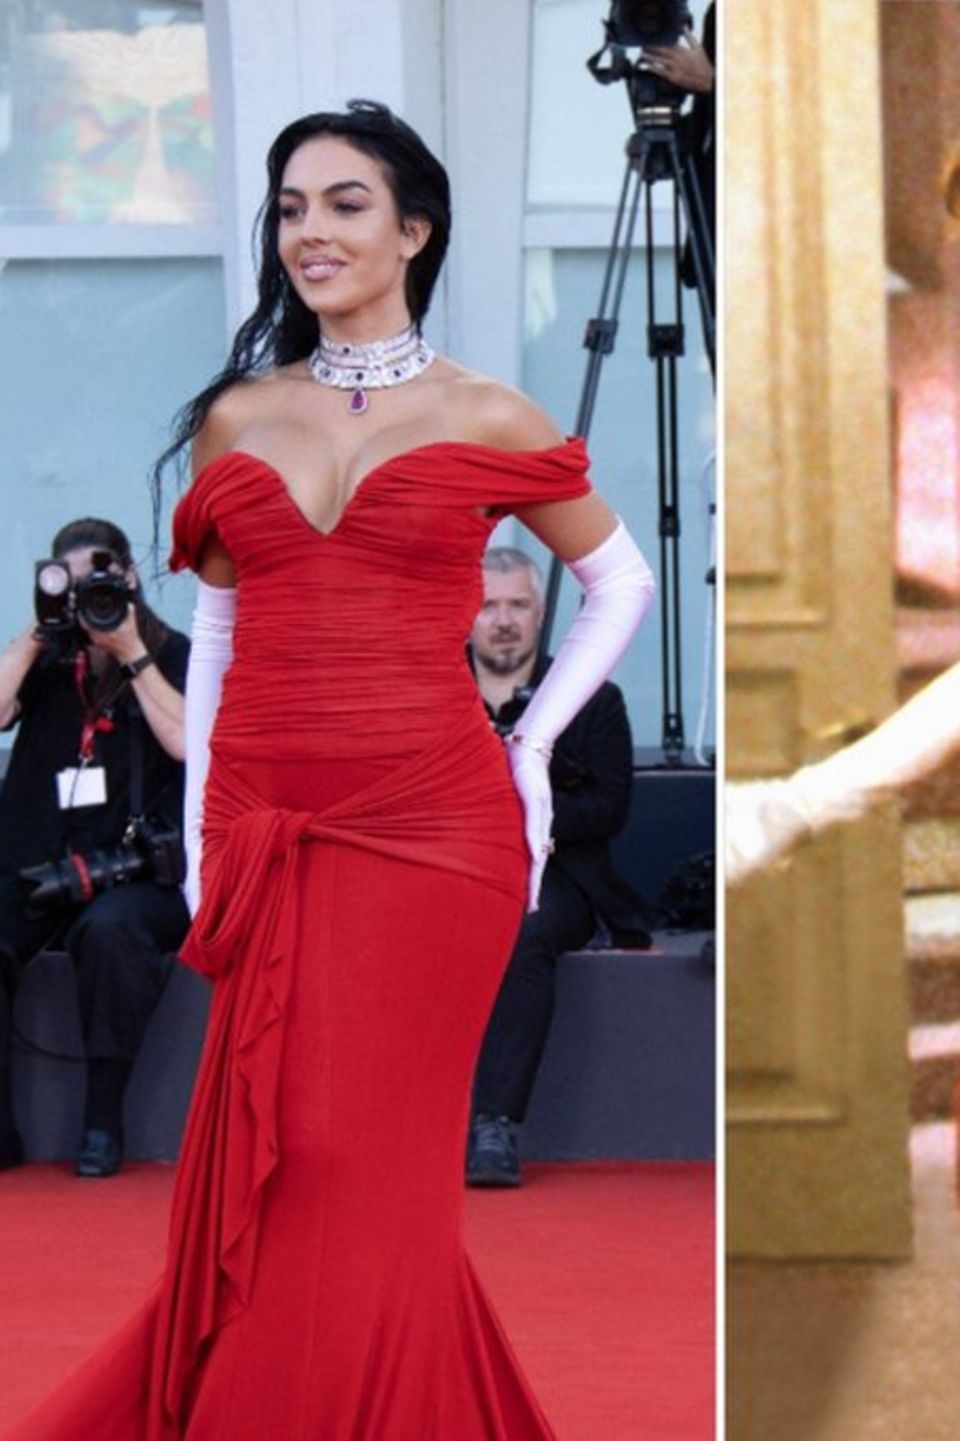 Scheint ein großer Fan von "Pretty Woman" und Julia Roberts zu sein: Model Georgina Rodriguez (l.) in Venedig.